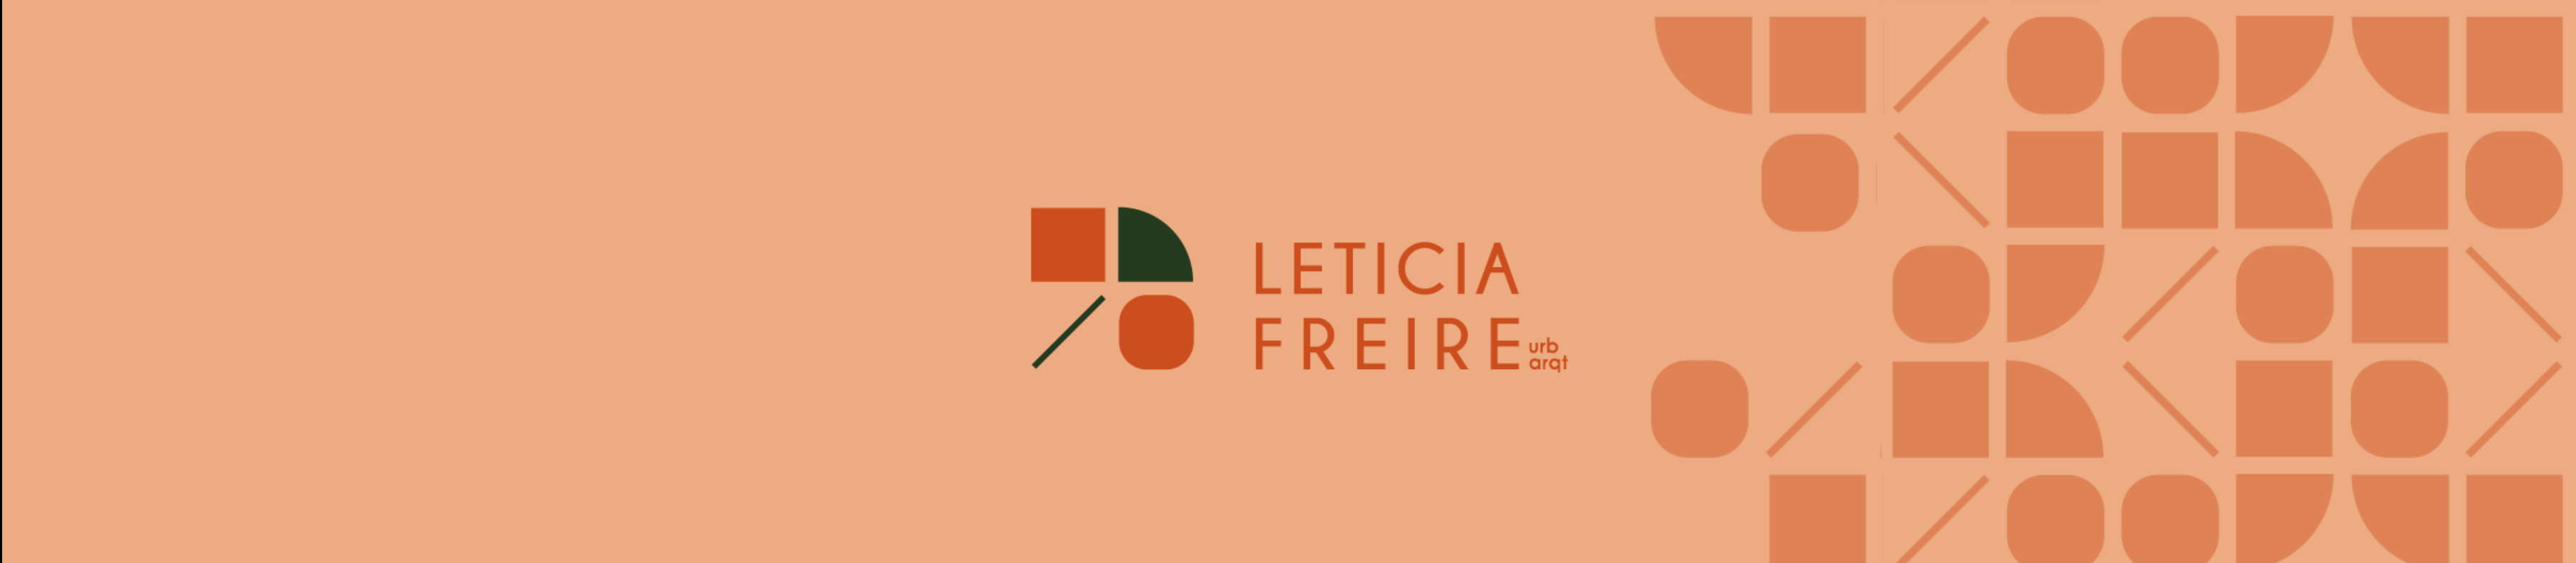 Leticia Freires profilbanner